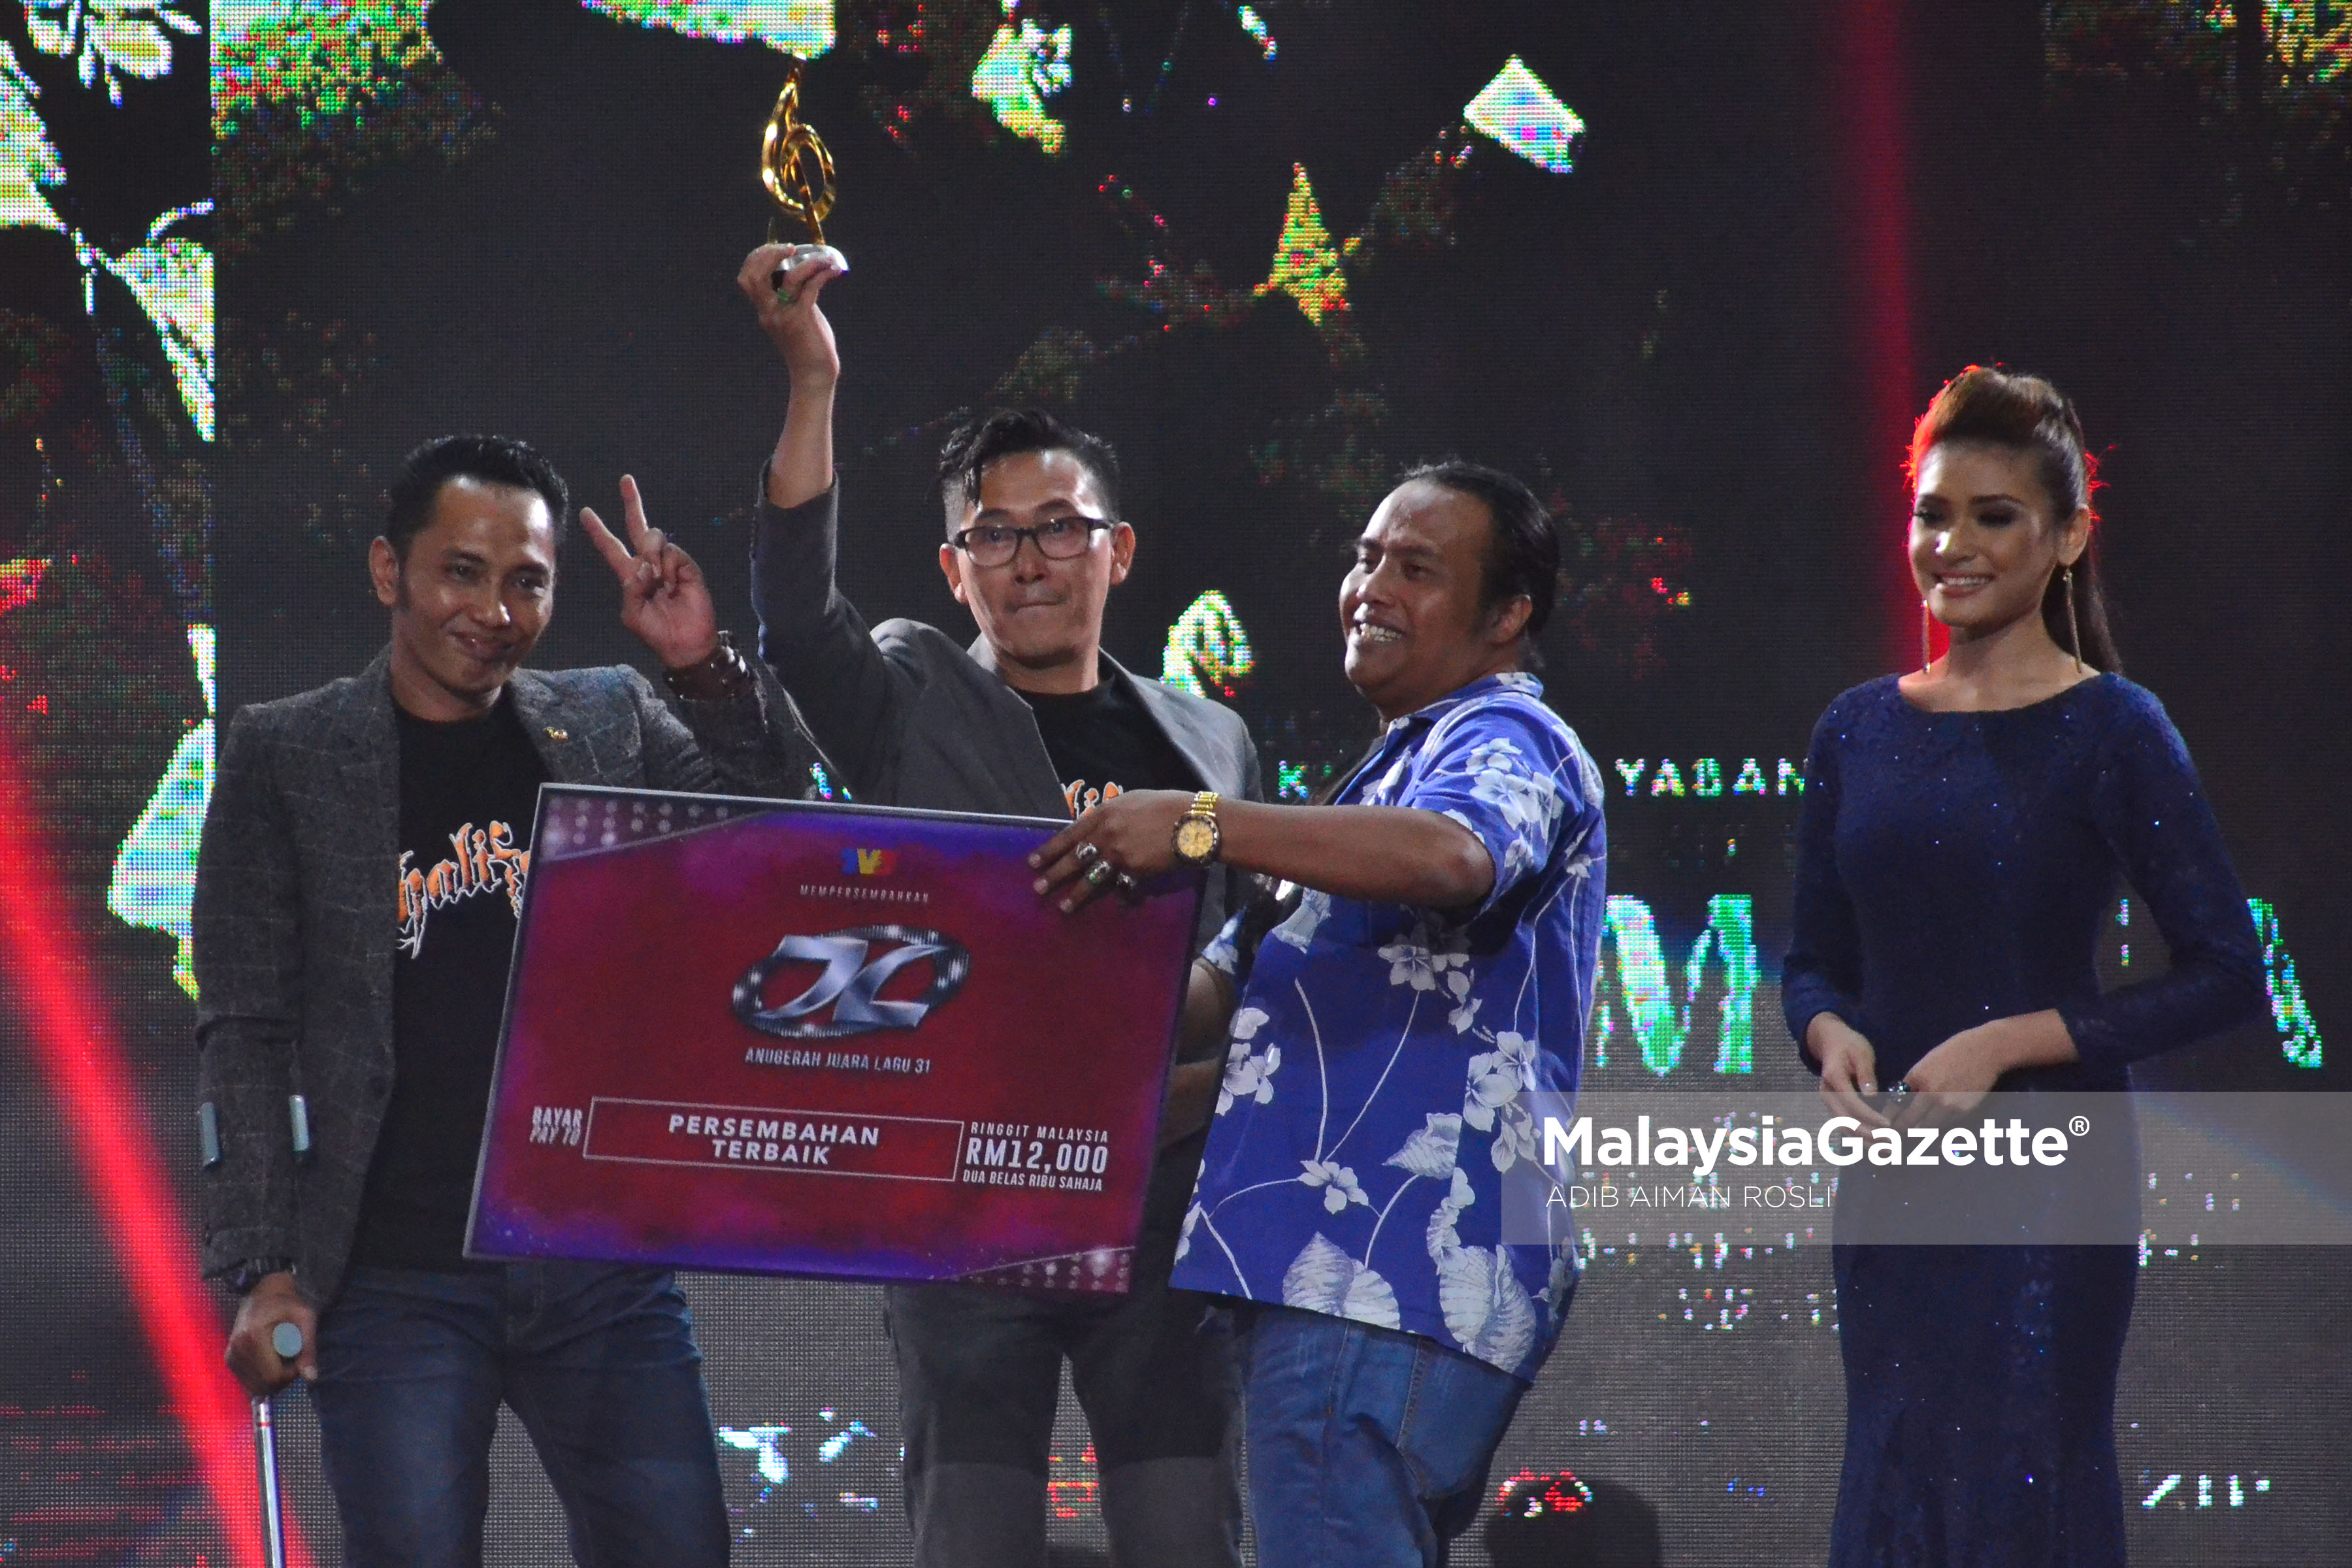 Kumpulan Khalifah dinobatkan sebagai pemenang "Persembahan Terbaik" pada malam Anugerah Juara Lagu KE 31 di Pusat Dagangan Dunia Putra (PWTC), Kuala Lumpur. foto ADIB AIMAN ROSLI, 22 JANUARI 2017.